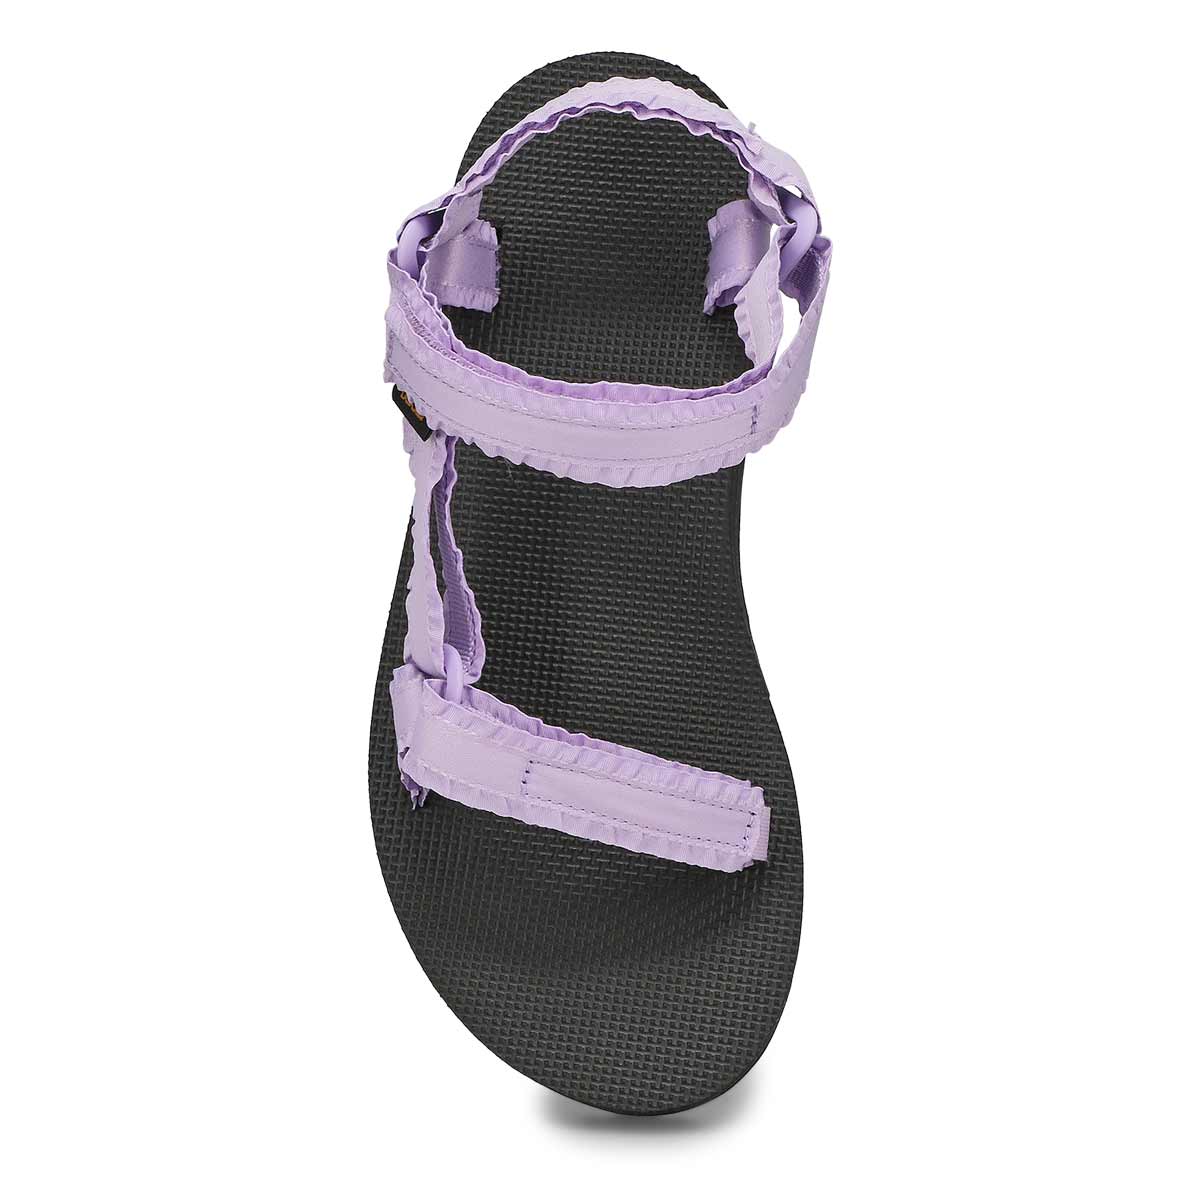 Sandale sport MIDFORM ADORN, femmes